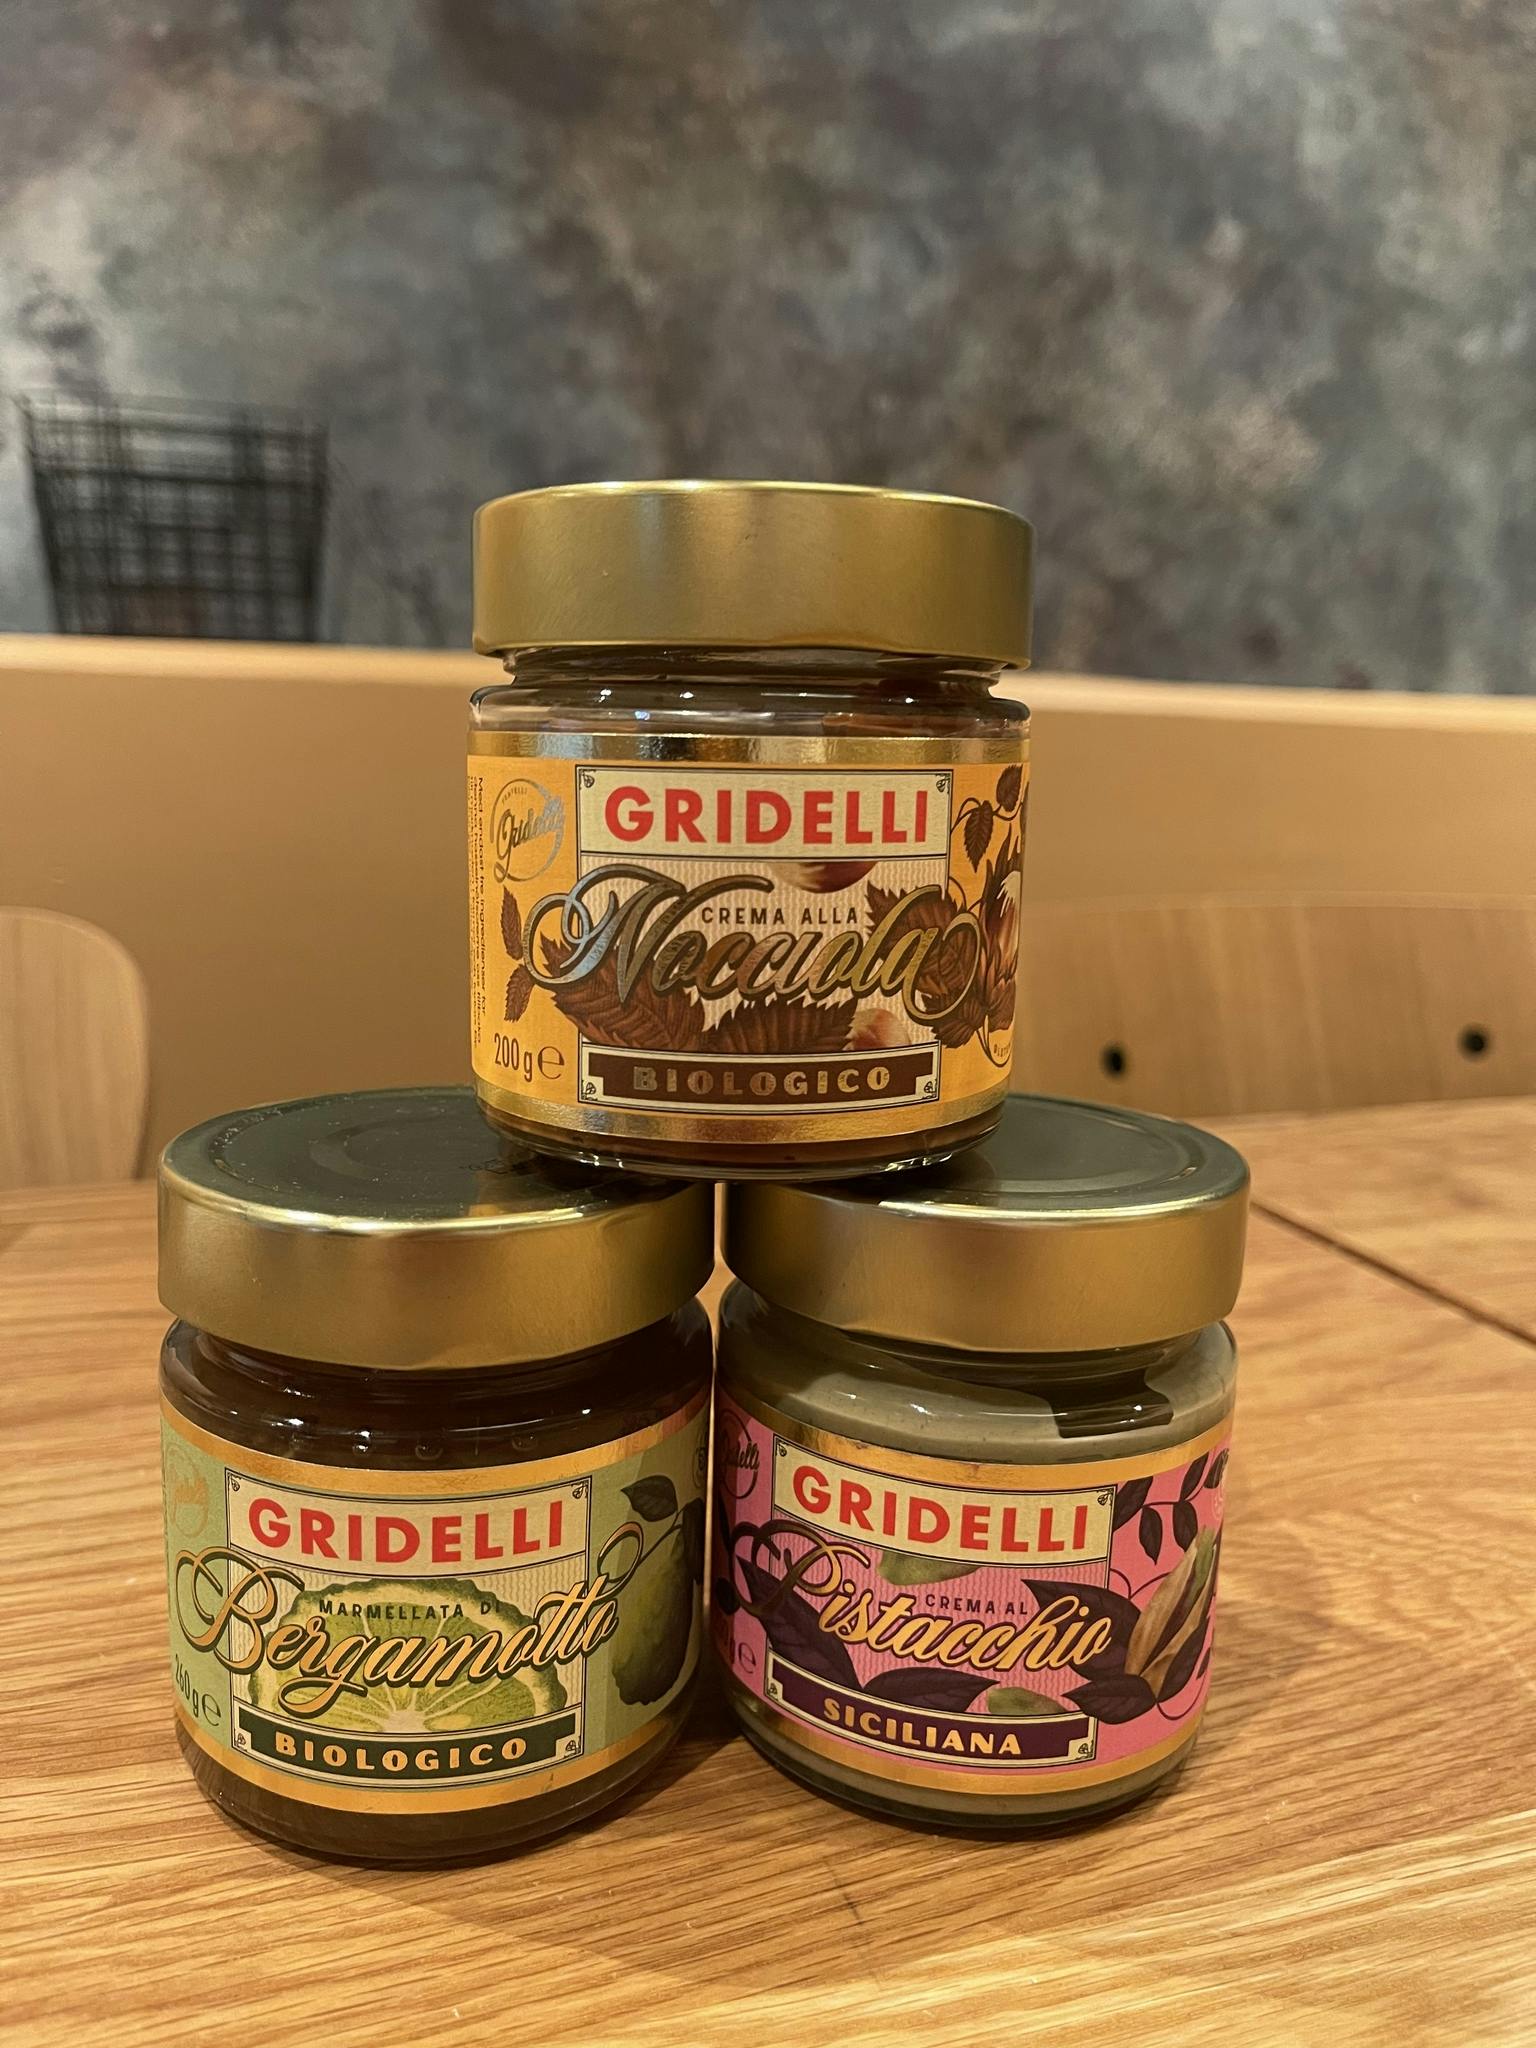 Gridelli - Marmelad och crème